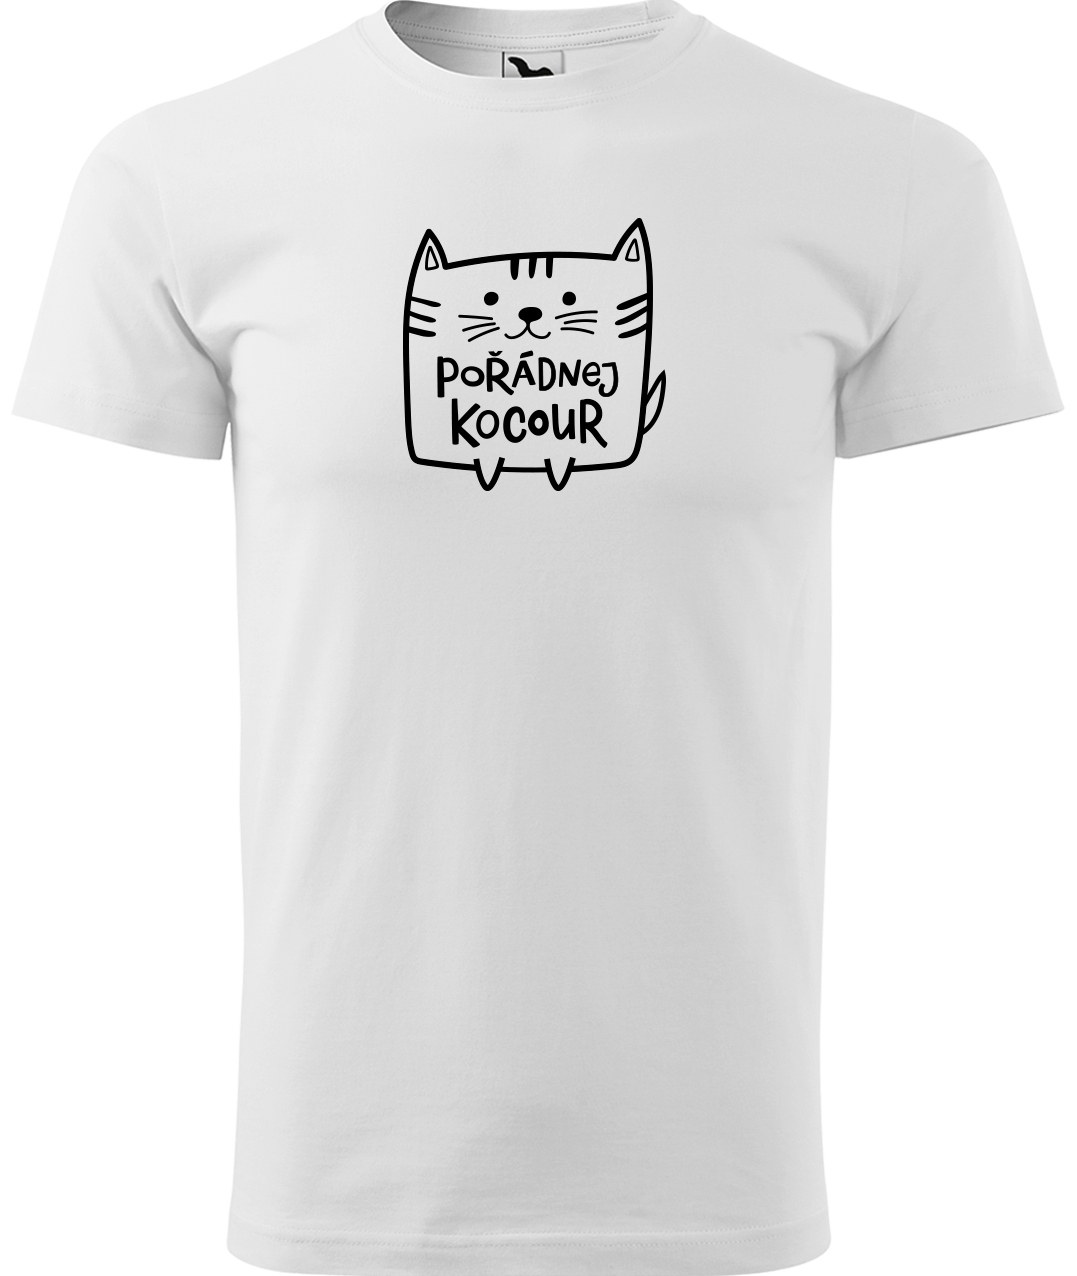 Pánské tričko s kočkou - Pořádnej kocour Velikost: 3XL, Barva: Bílá (00)